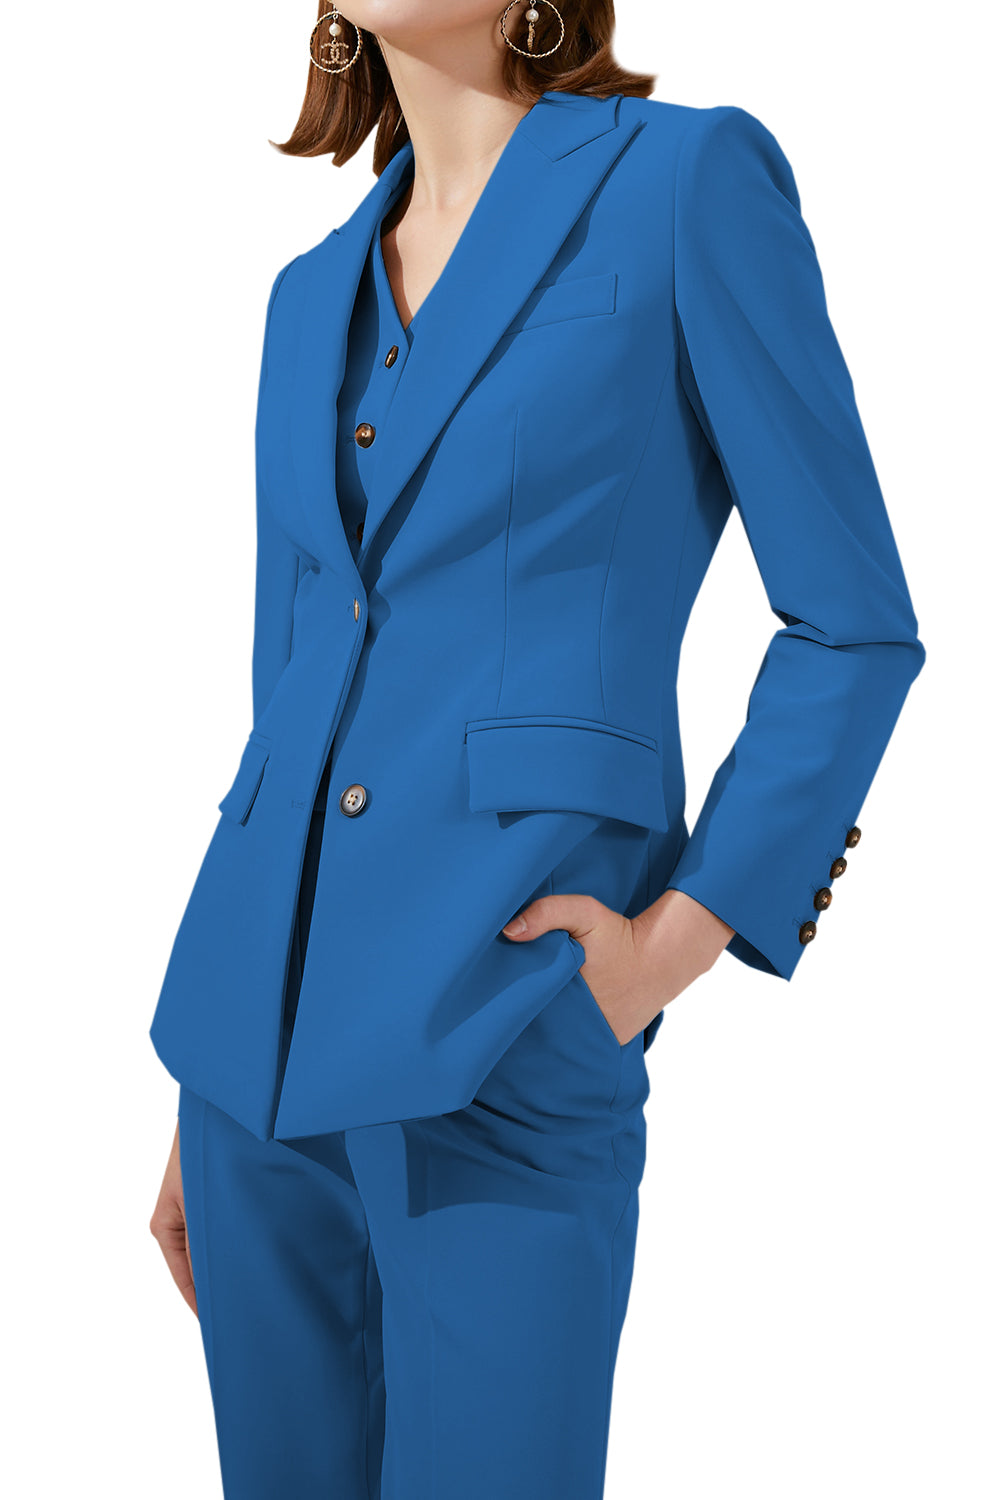 3 Piece Business Peak Lapel Slim Fit Women Suit